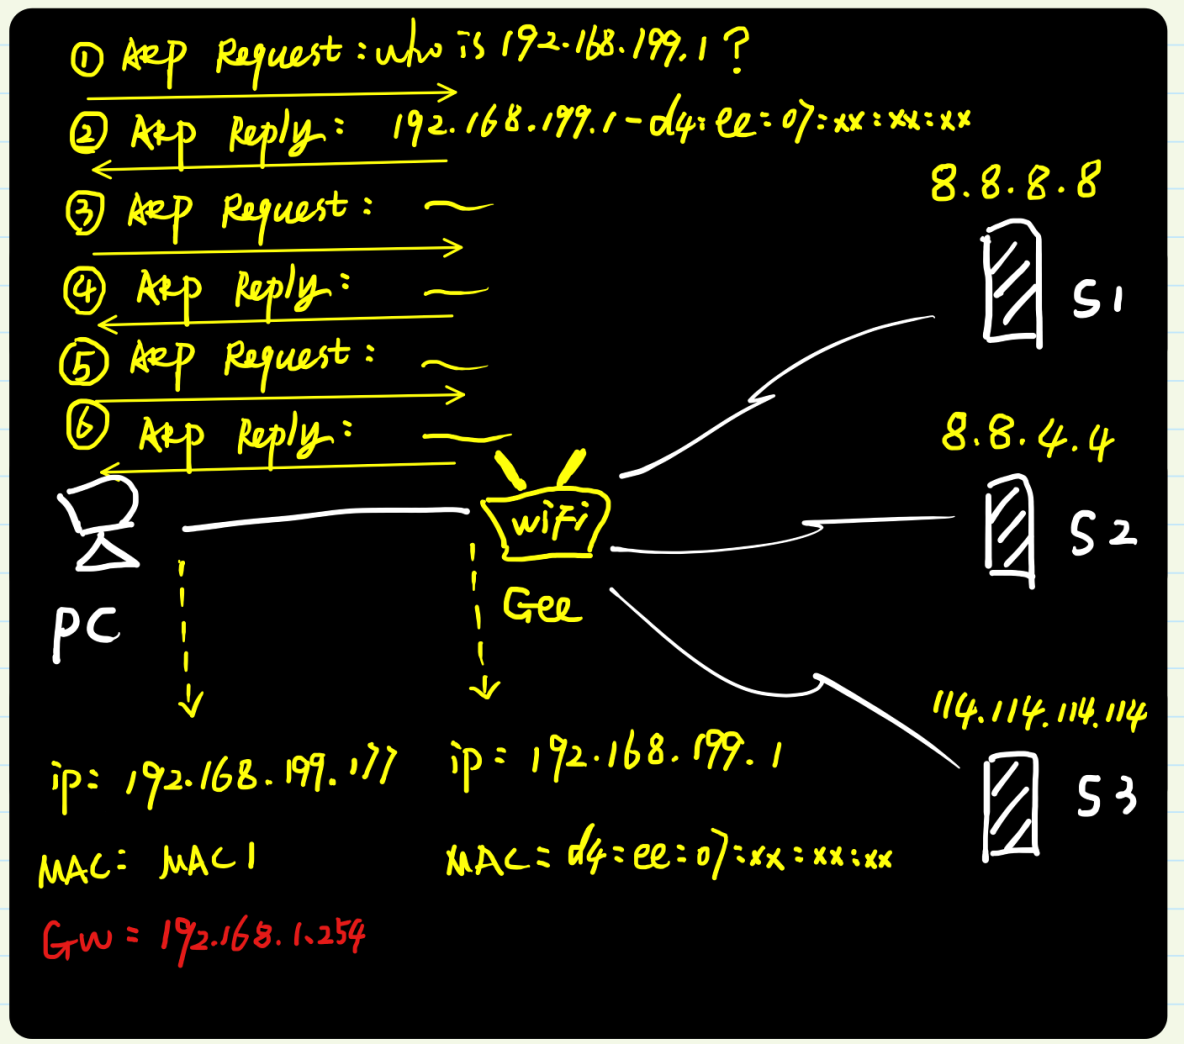 图解ARP协议（四）代理ARP原理与实践（“善意的欺骗”）_TCP/IP_11